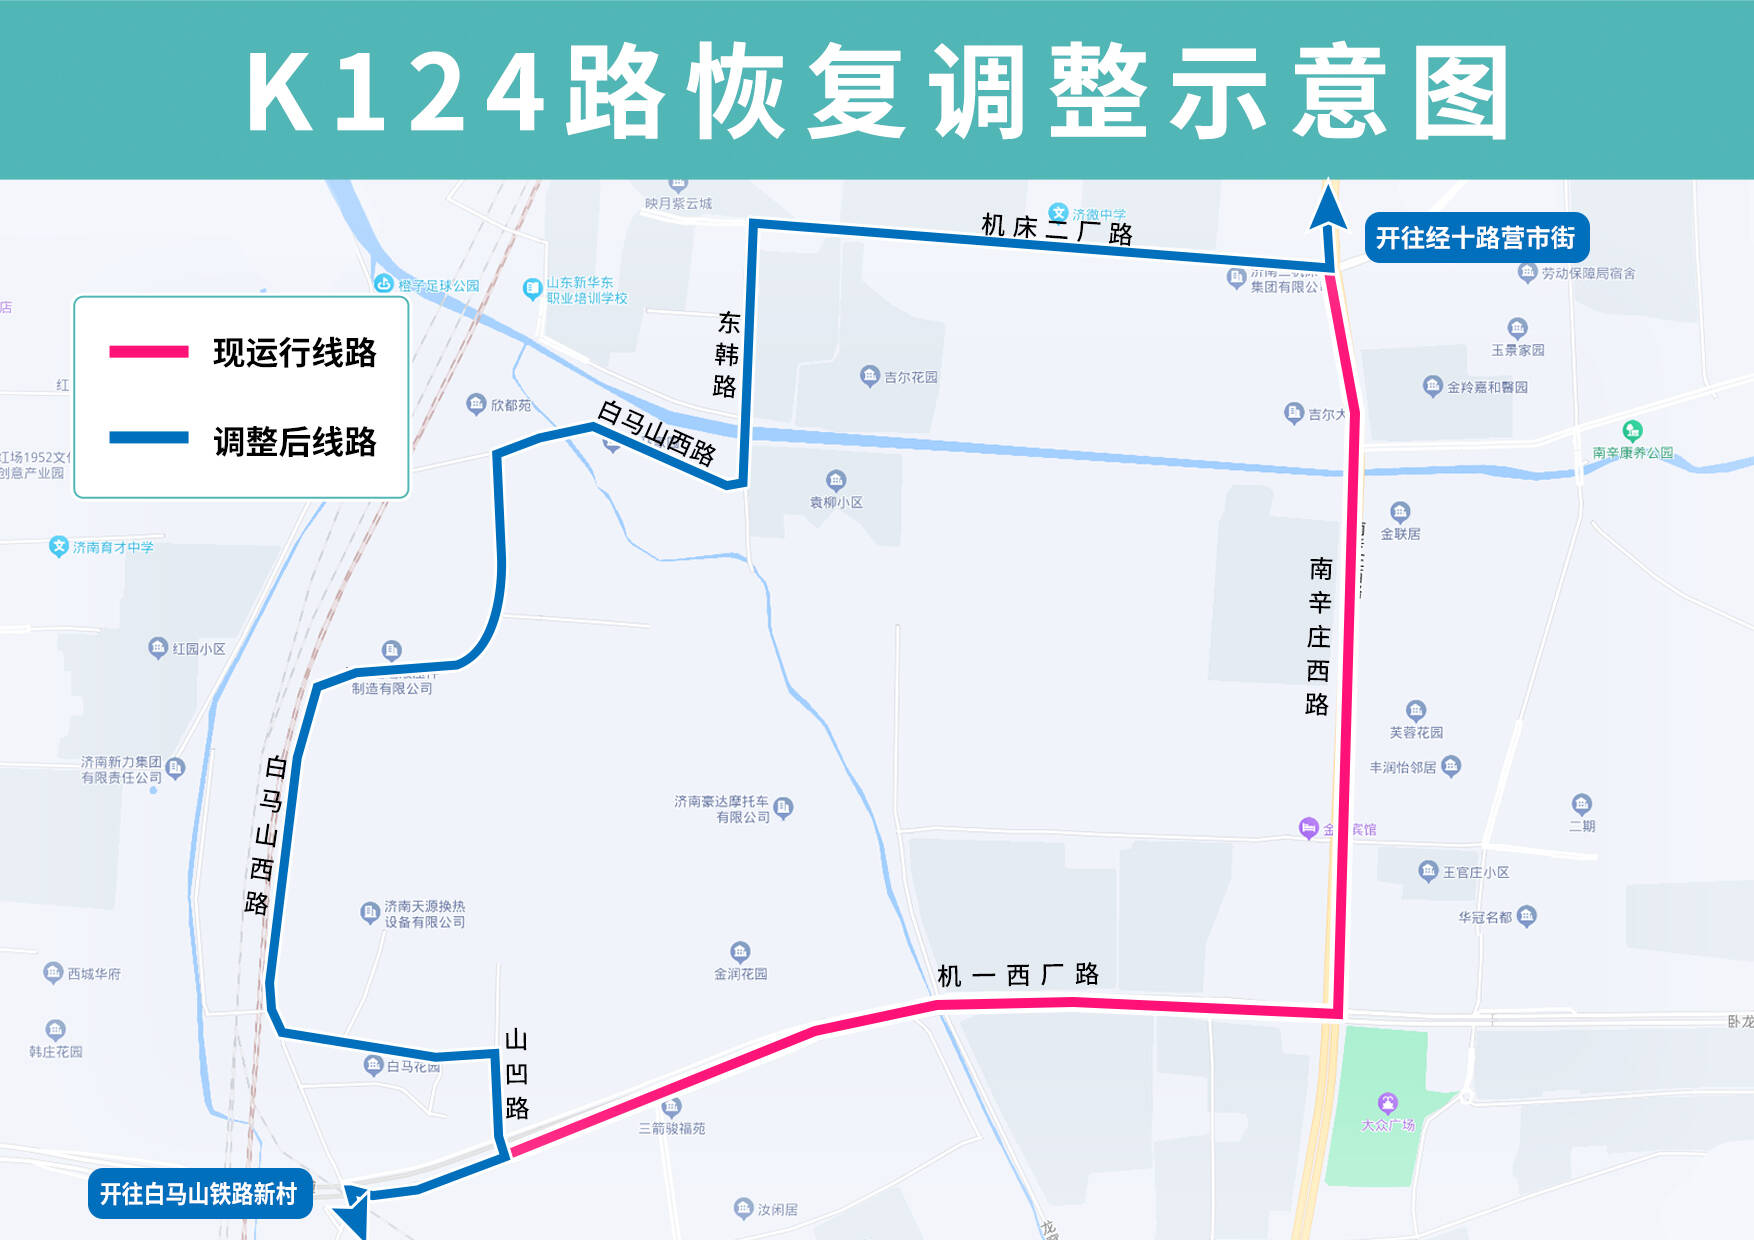 5月27日起济南公交K152路优化调整部分运行路段 K124路恢复原线路运行